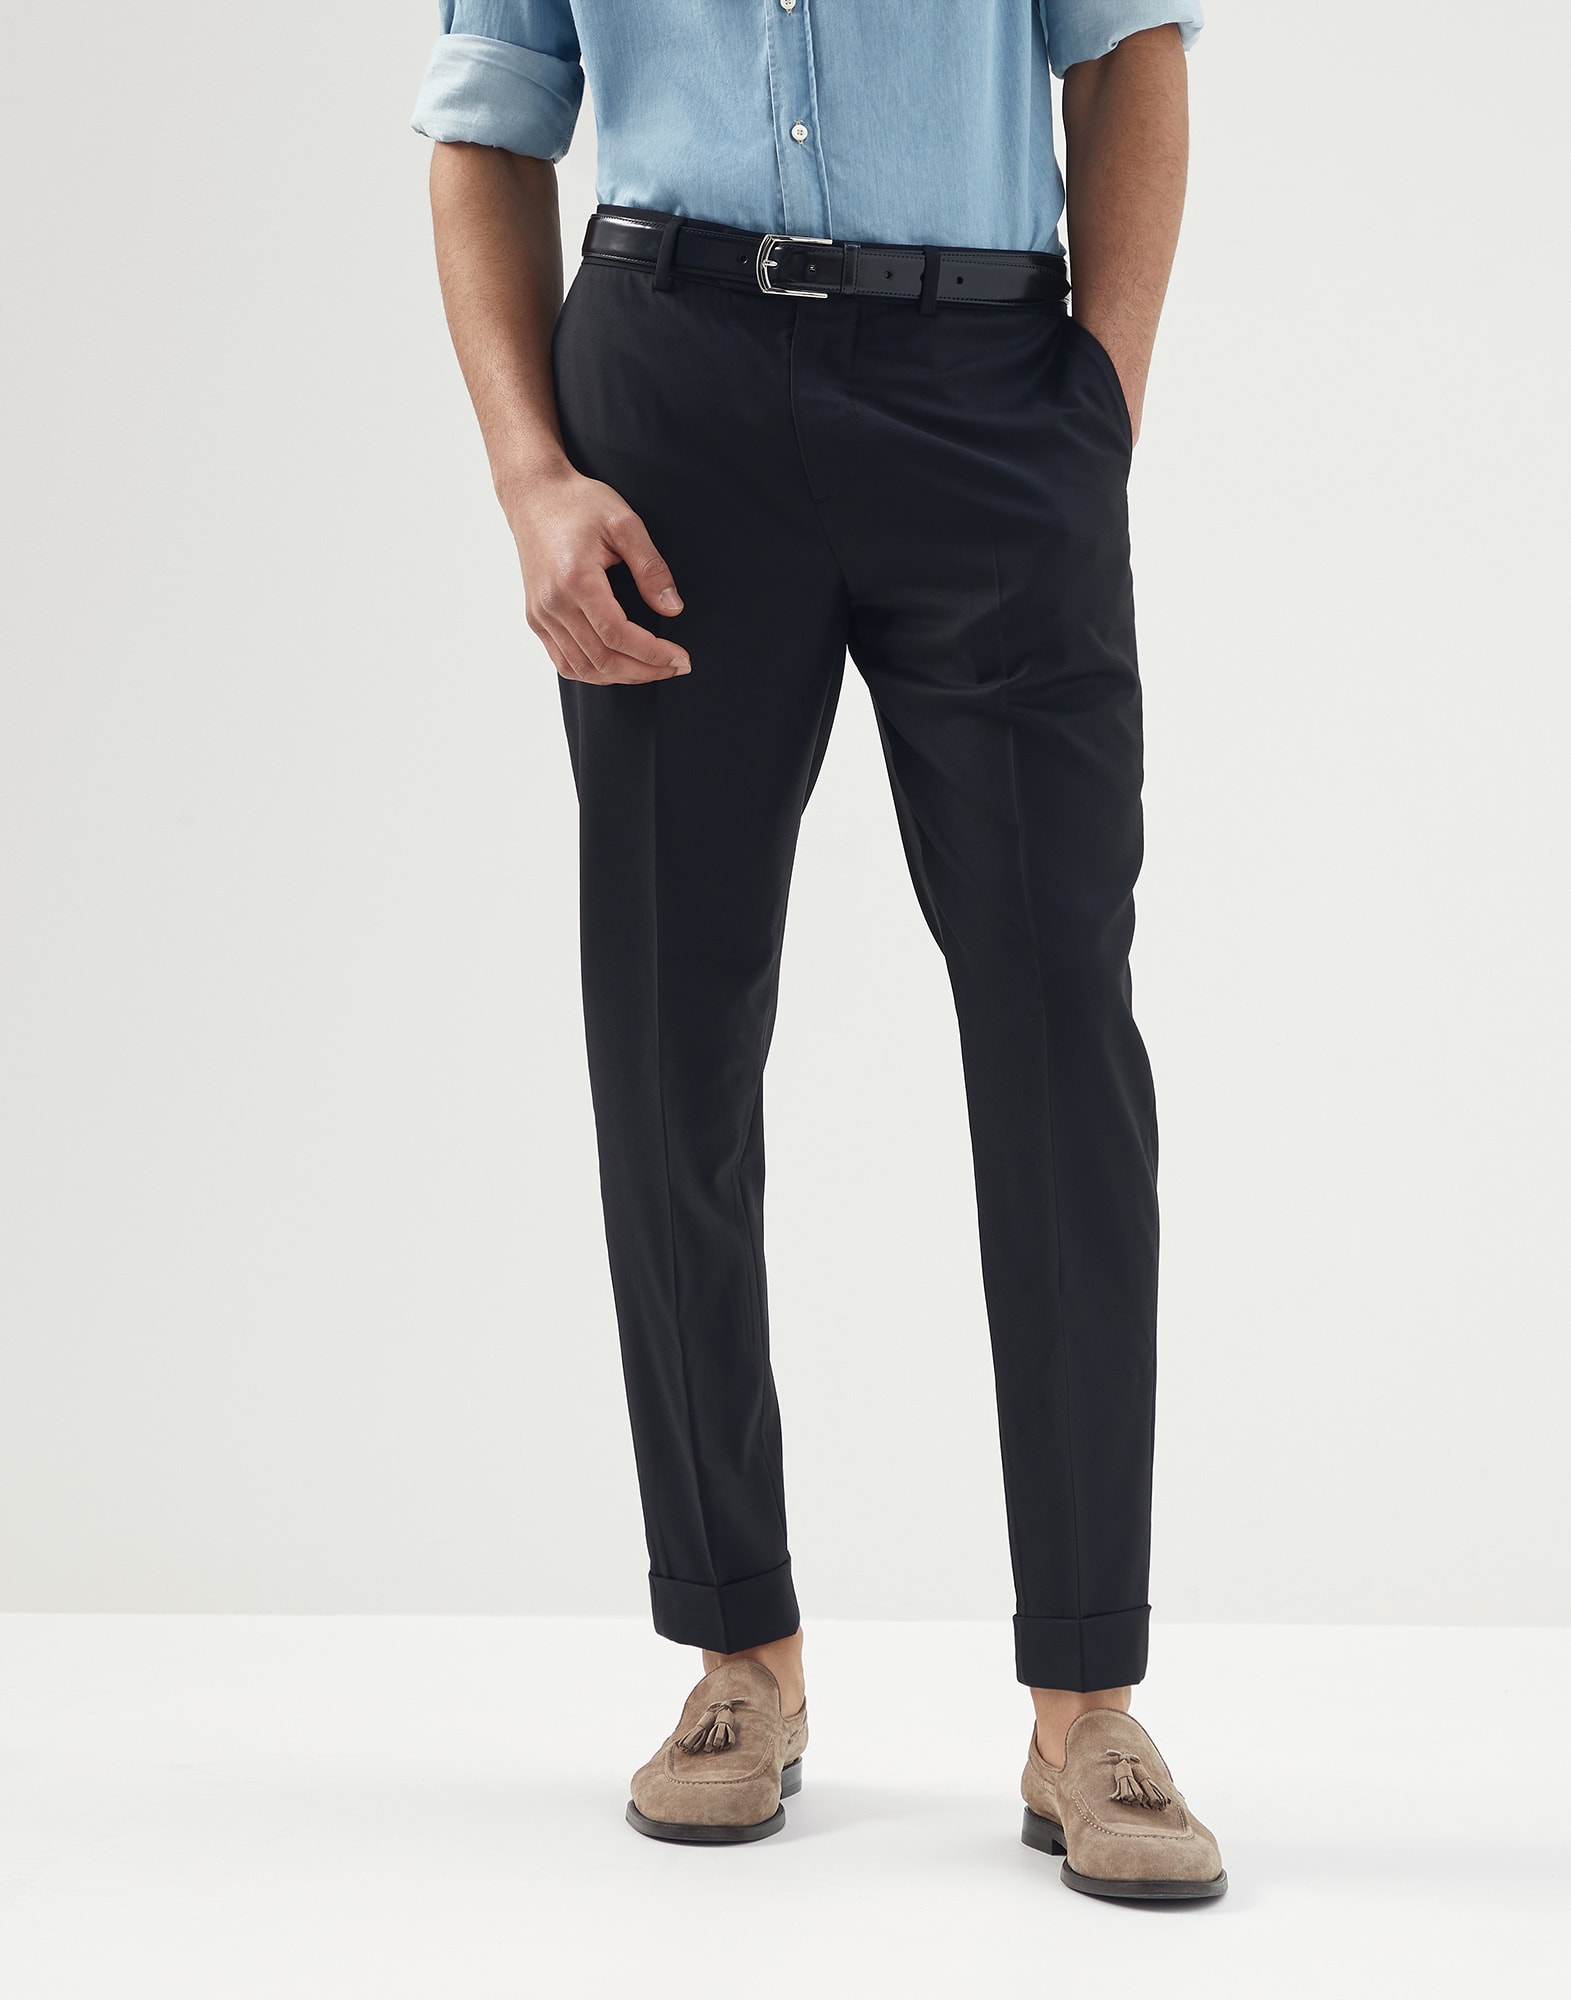 ELANHOOD Men's Slim Fit Poly Cotton Ravishing Glamorous Formal Designer  Trouser Pant